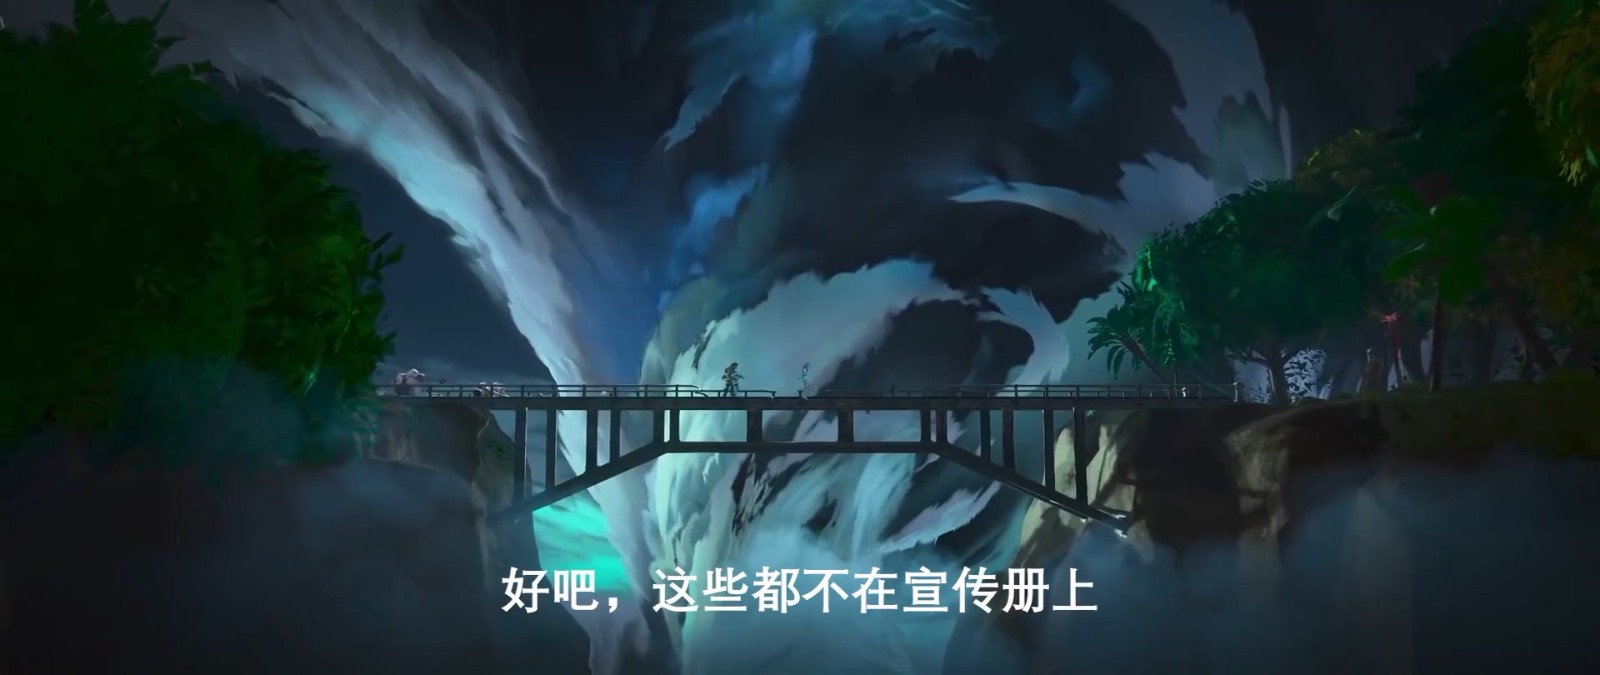 《Apex英雄》第11赛季宣传片 新海岛地图曝光